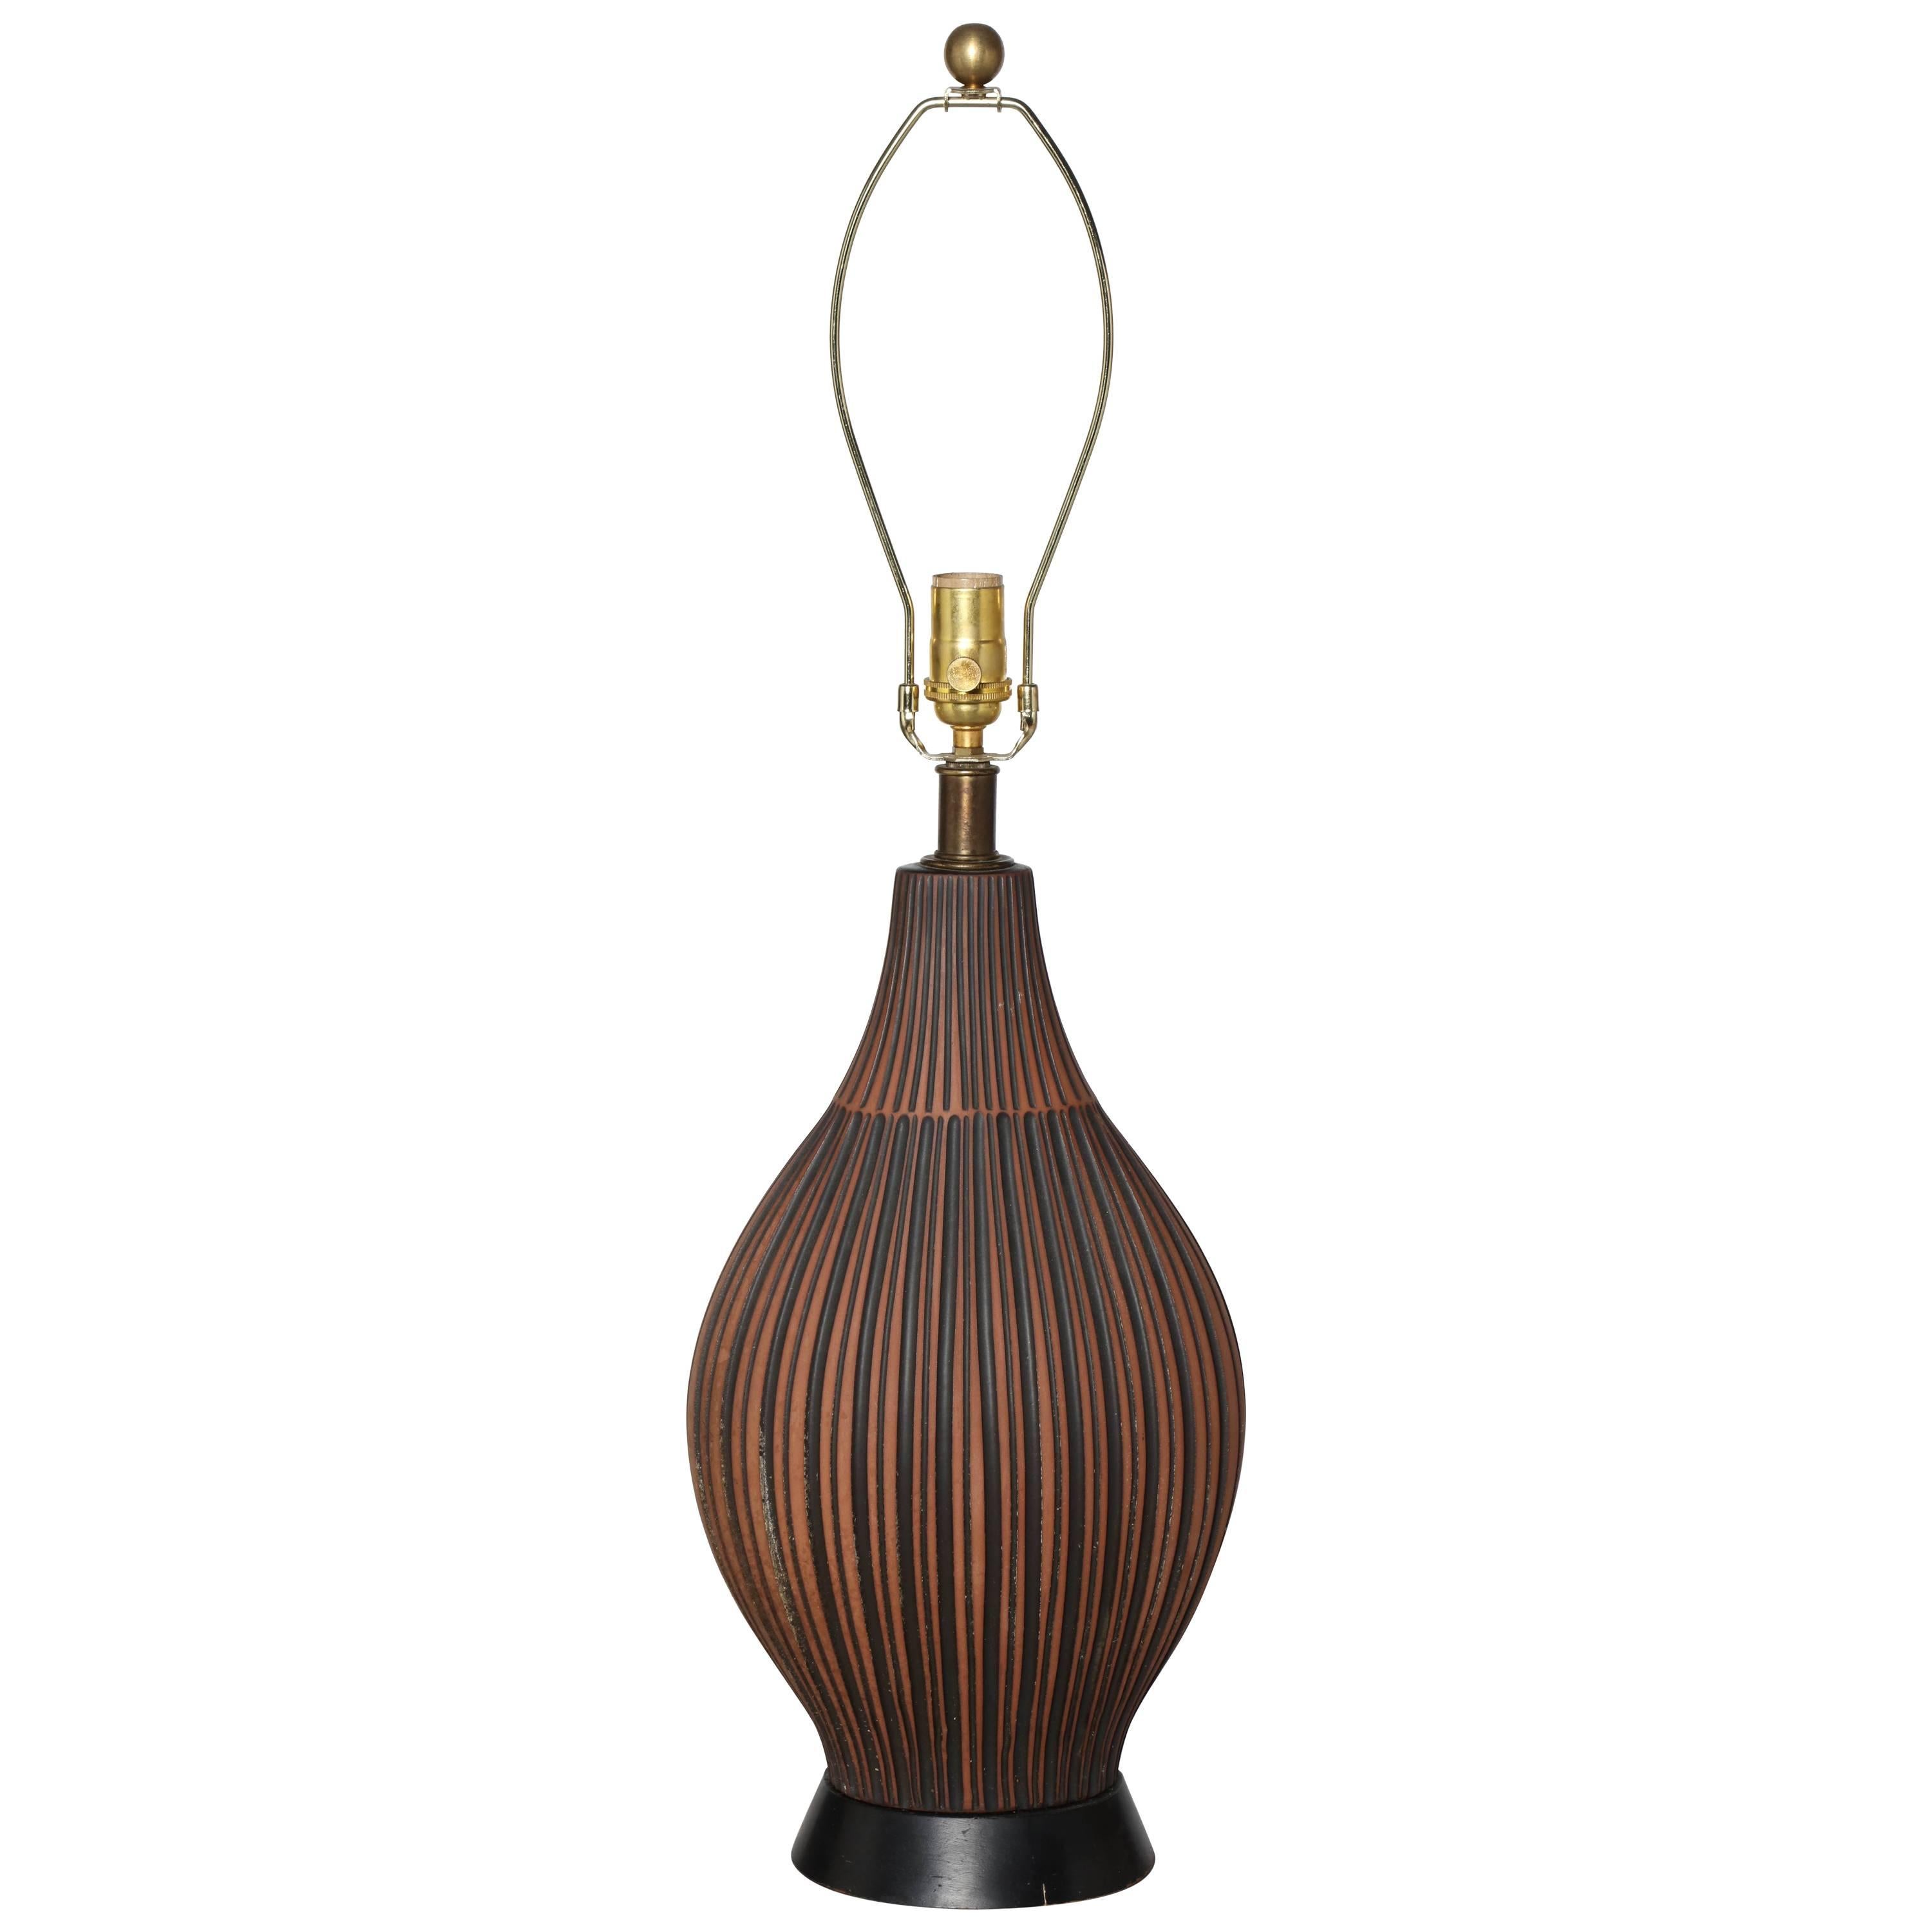 Lee Rosen for Design-Technics Style Terracotta & Black Pottery Table Lamp